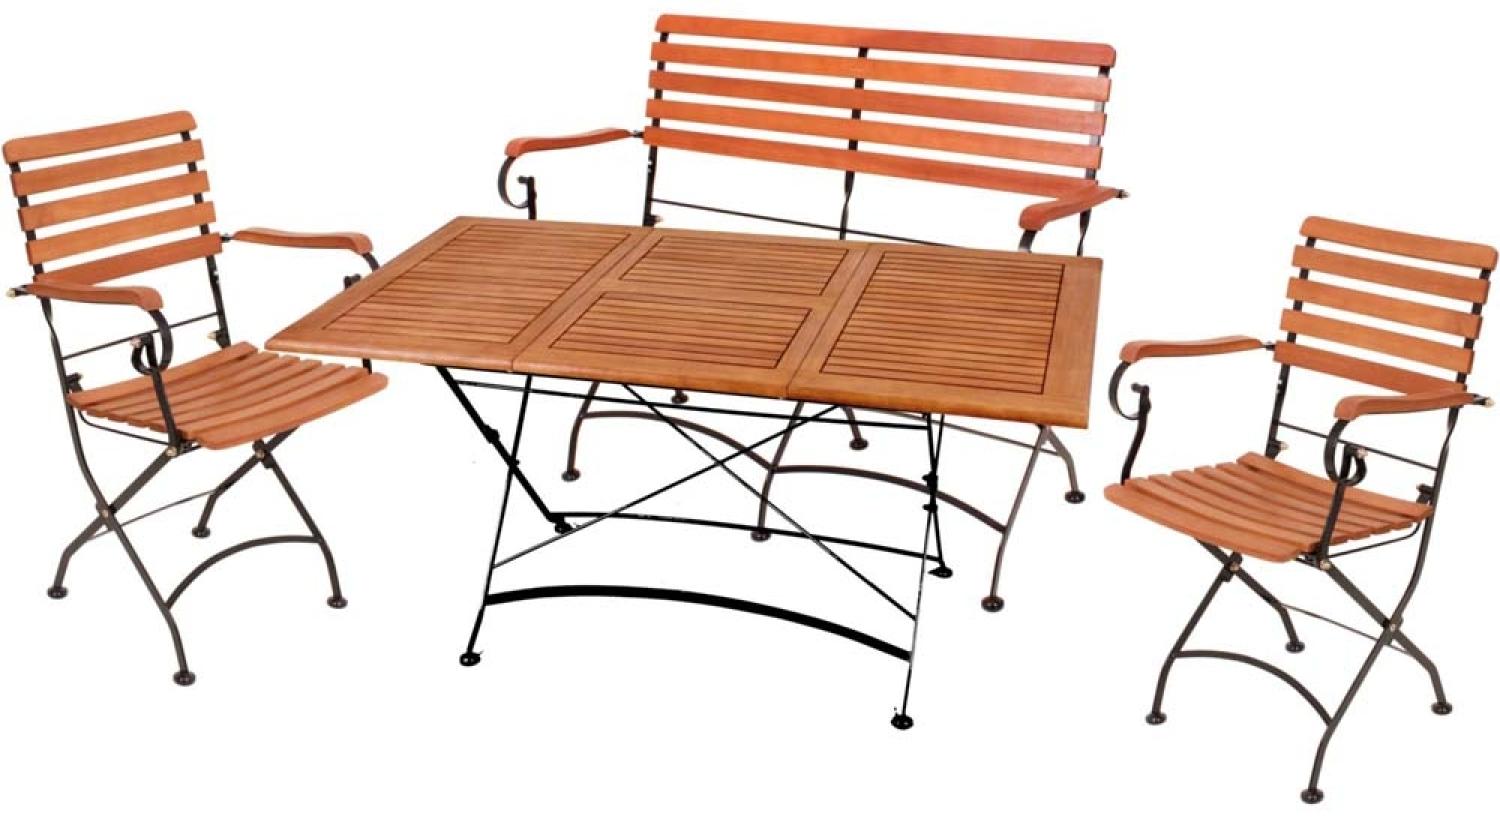 Tischgruppe WIEN, 4 teilig, Tisch, Bank, 2 Stühle, Eukalyptus Bild 1